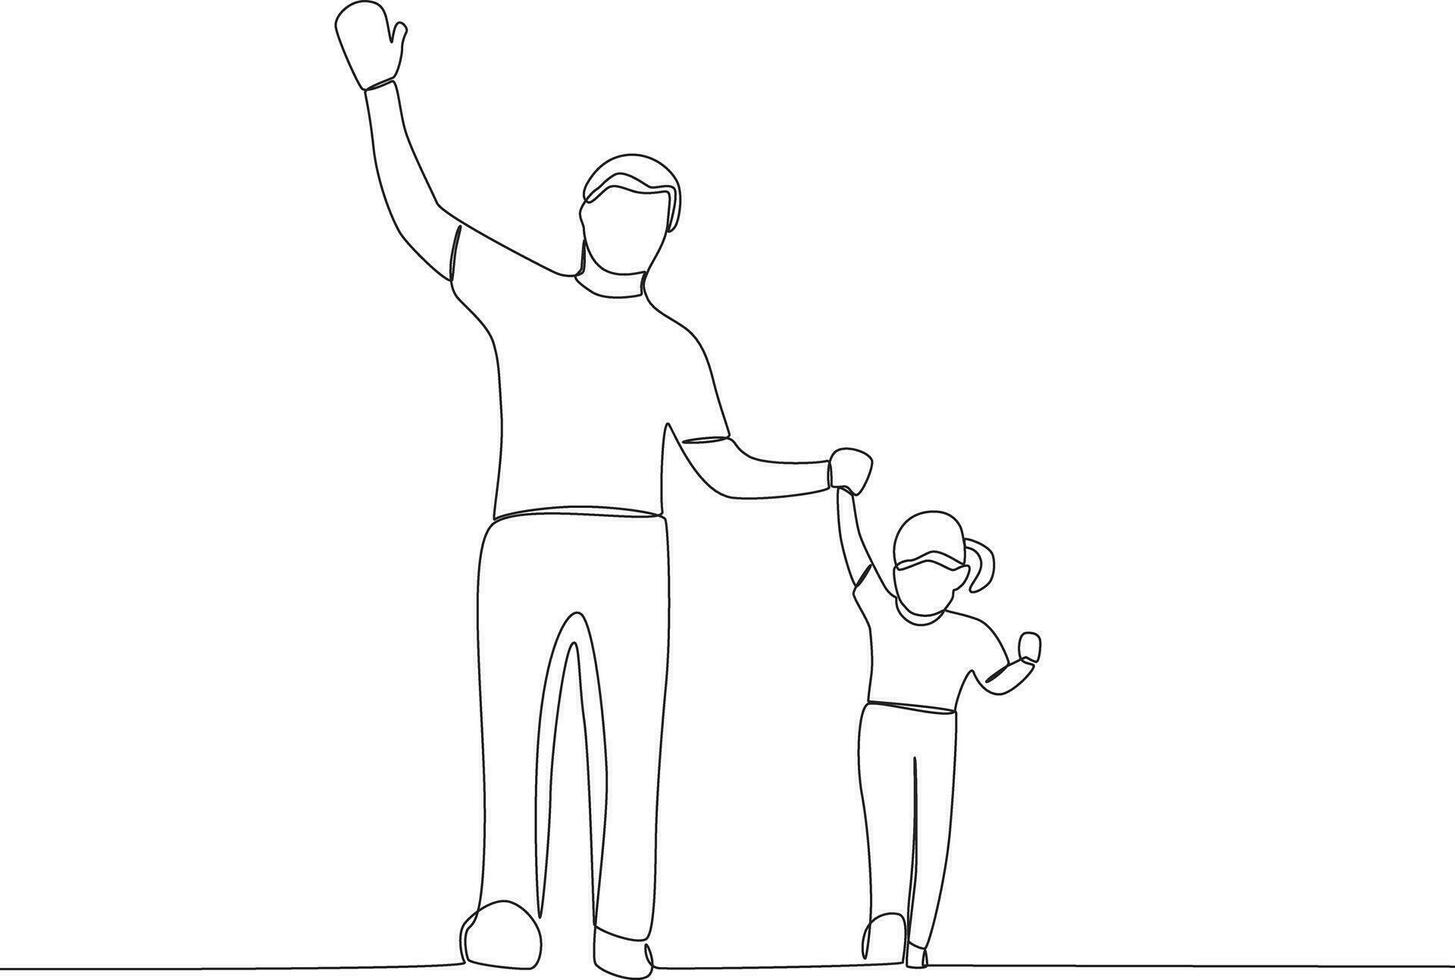 Single kontinuierlich Linie Zeichnung Tochter und Vater. global Tag Elternteil Konzept vektor